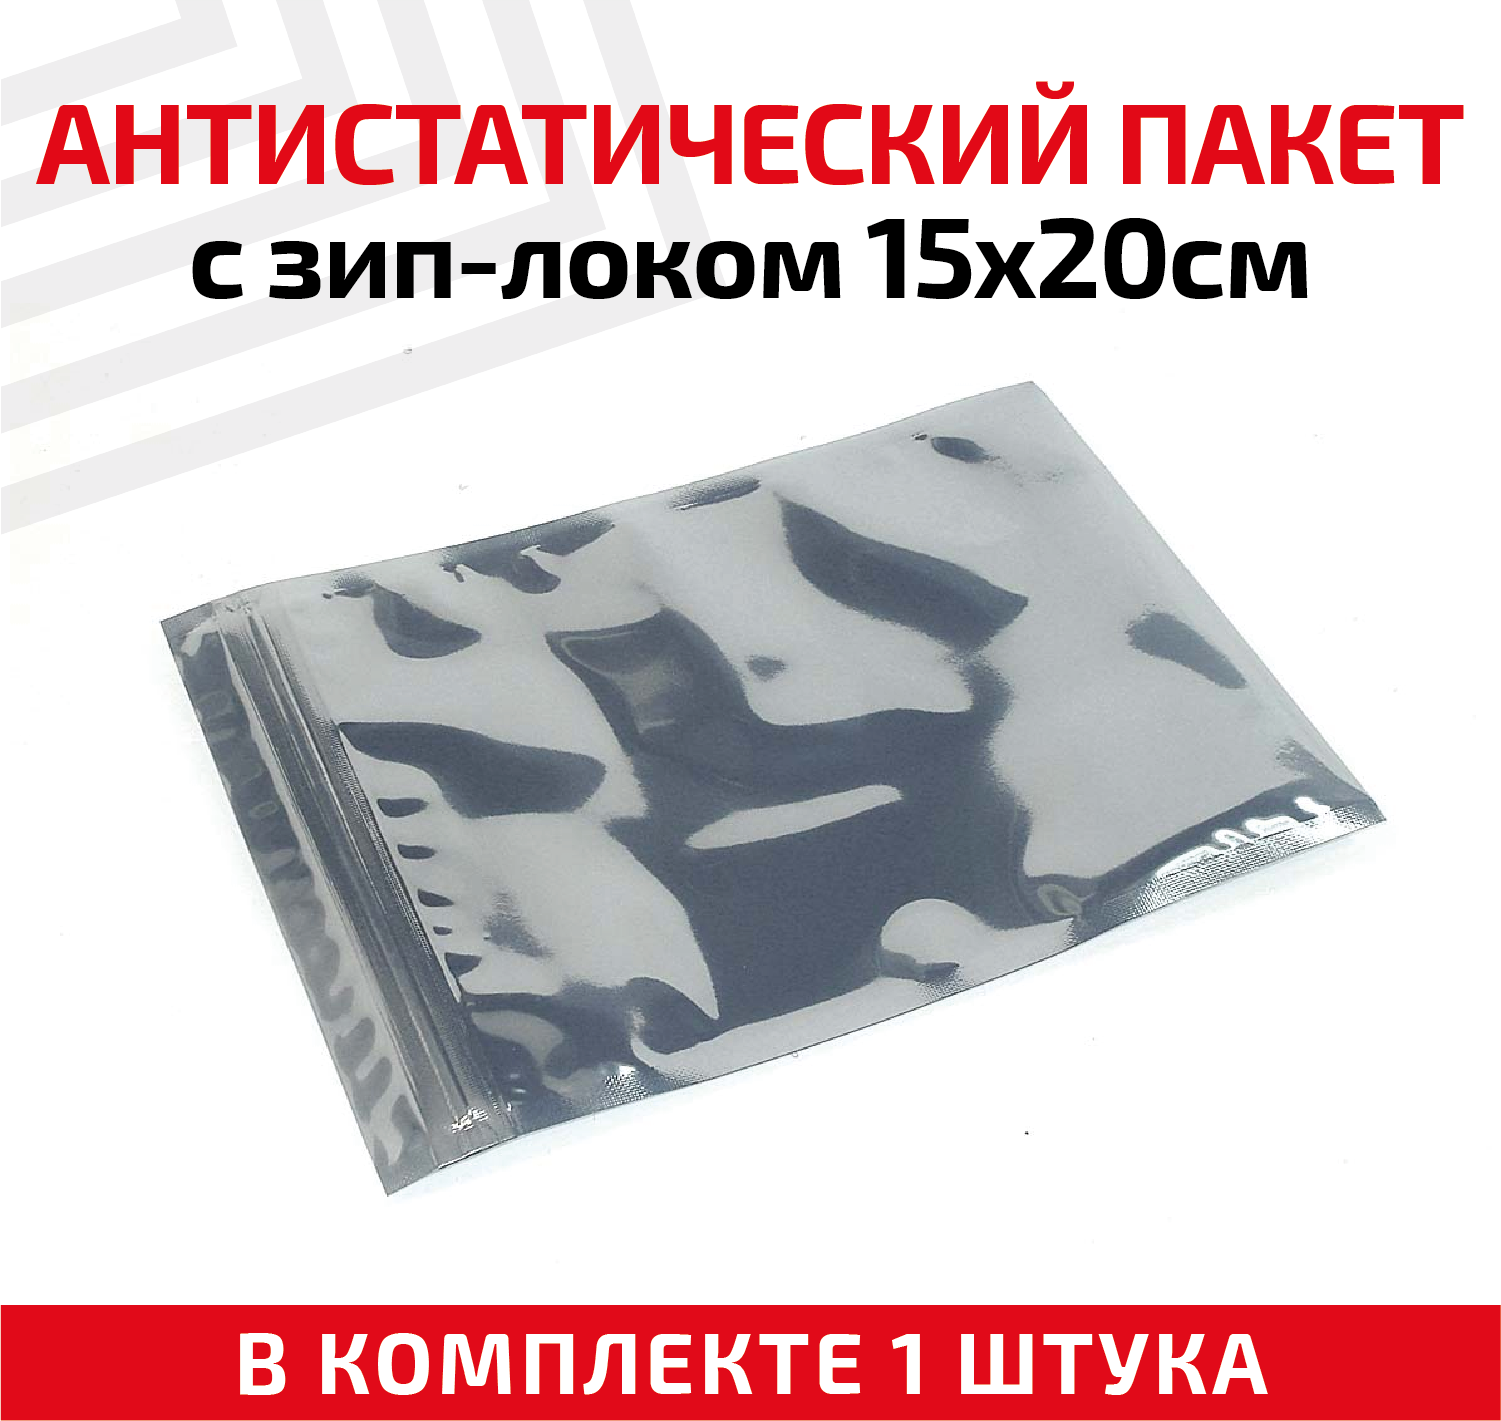 Пакет антистатический с зип-локом, 15x20см